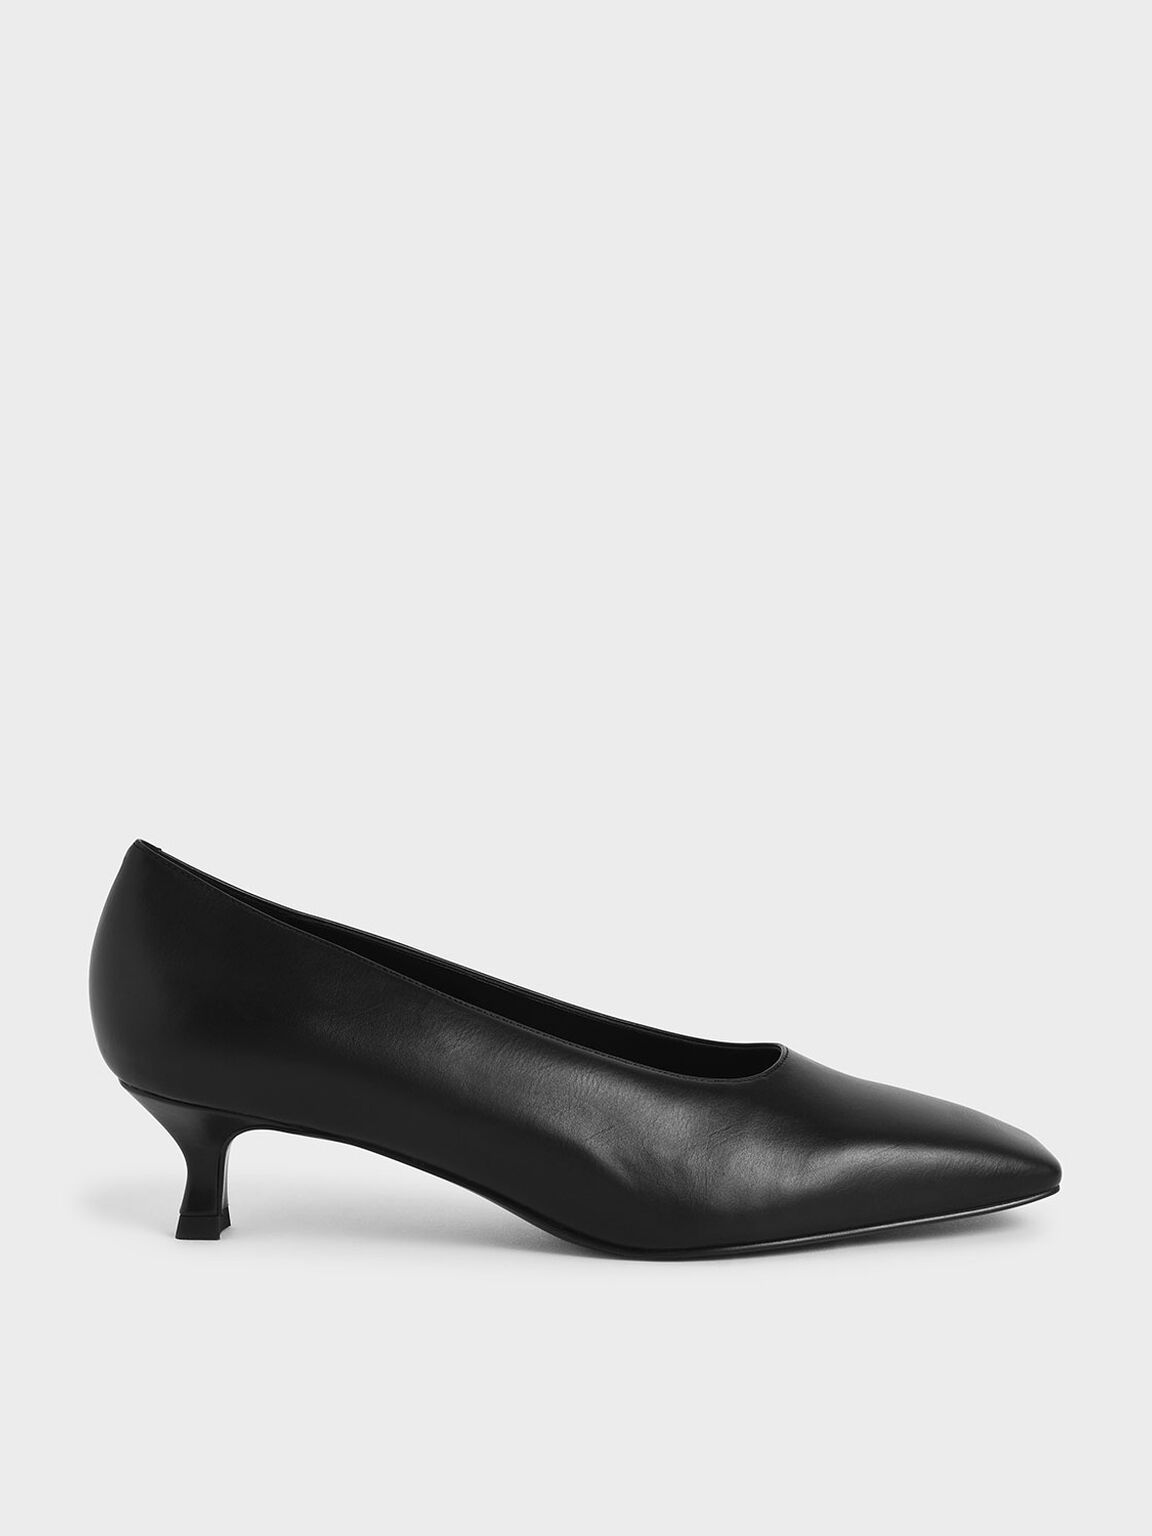 Square Toe Kitten Heel Court Shoes, Black, hi-res